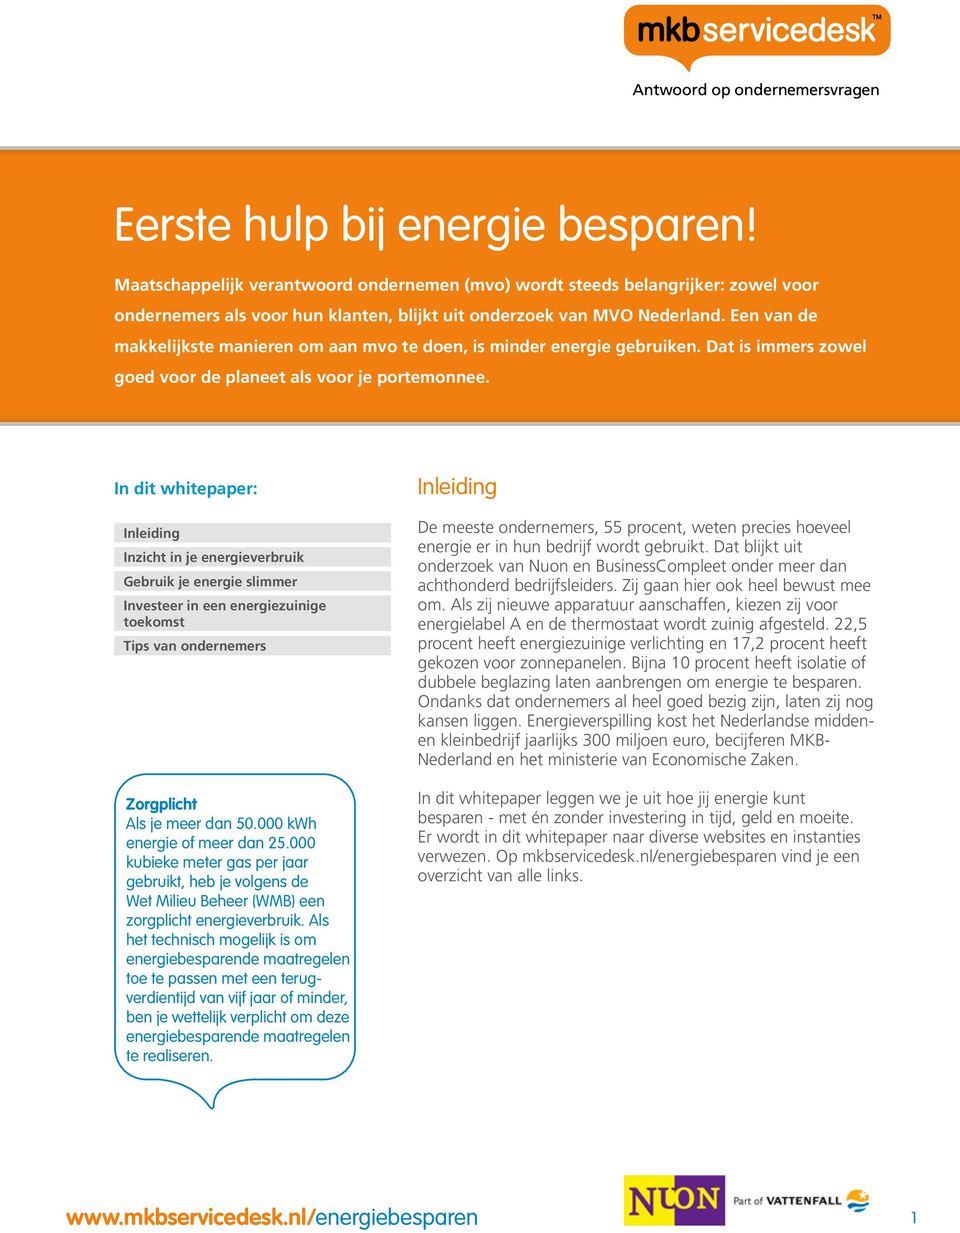 In dit whitepaper: Inleiding Inzicht in je energieverbruik Gebruik je energie slimmer Investeer in een energiezuinige toekomst Tips van ondernemers Zorgplicht Als je meer dan 50.